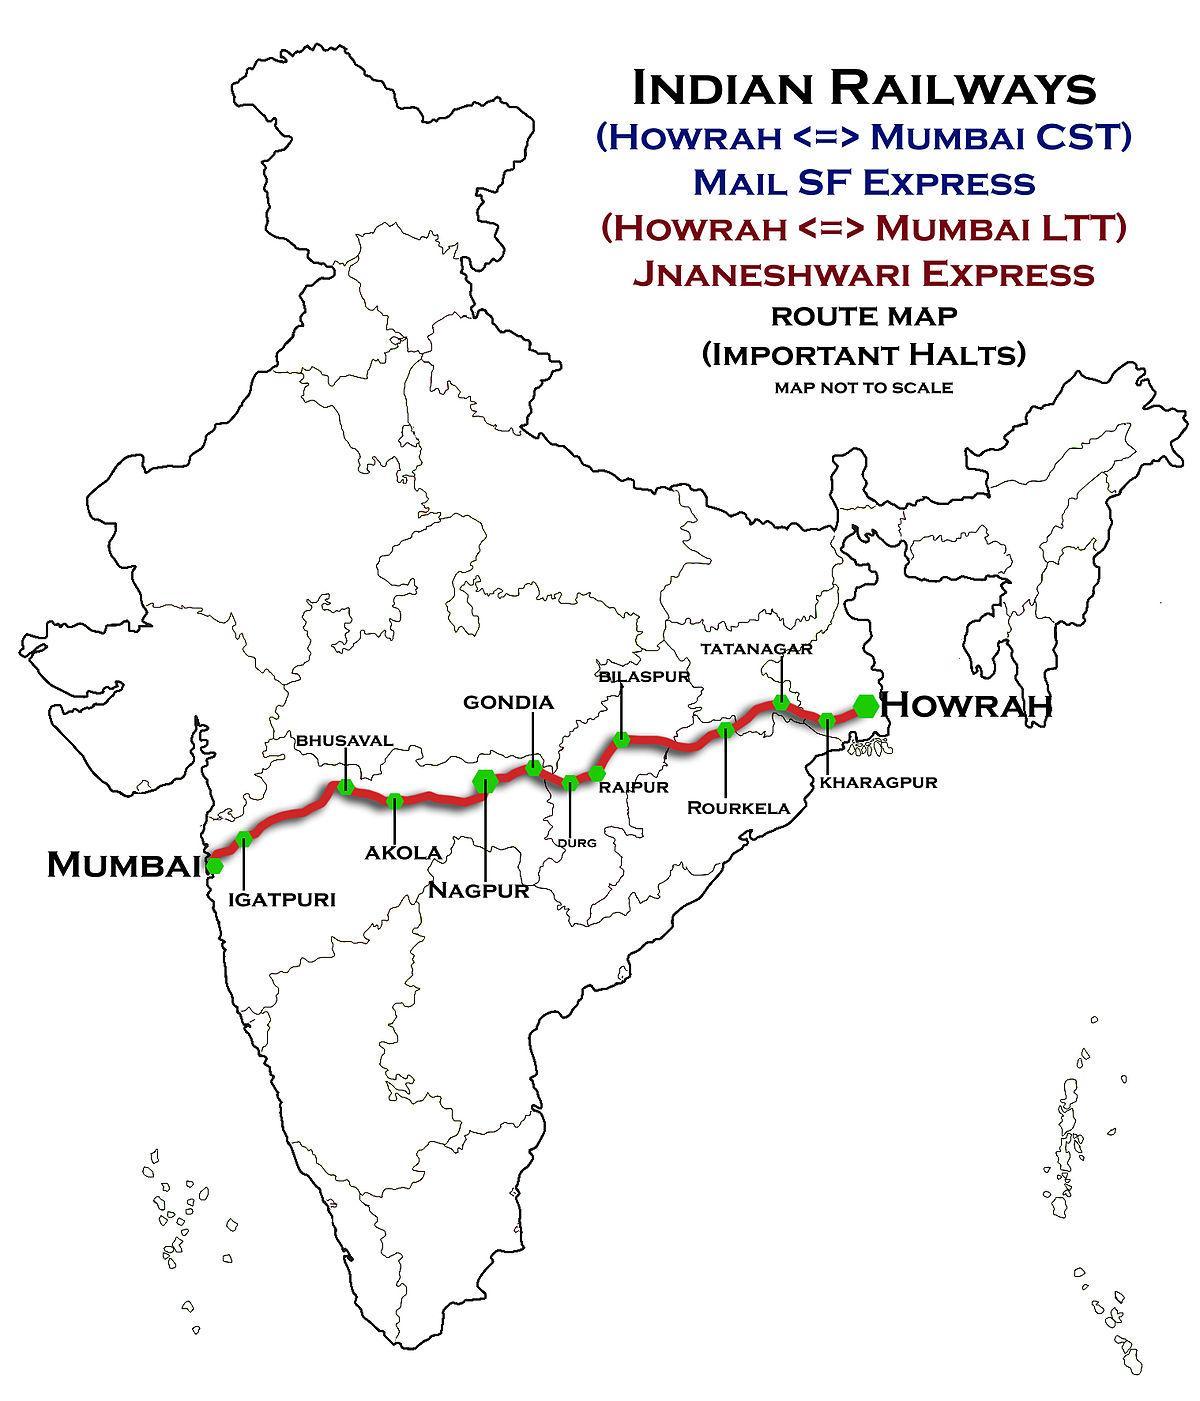 nagpur Mumbai express highway map